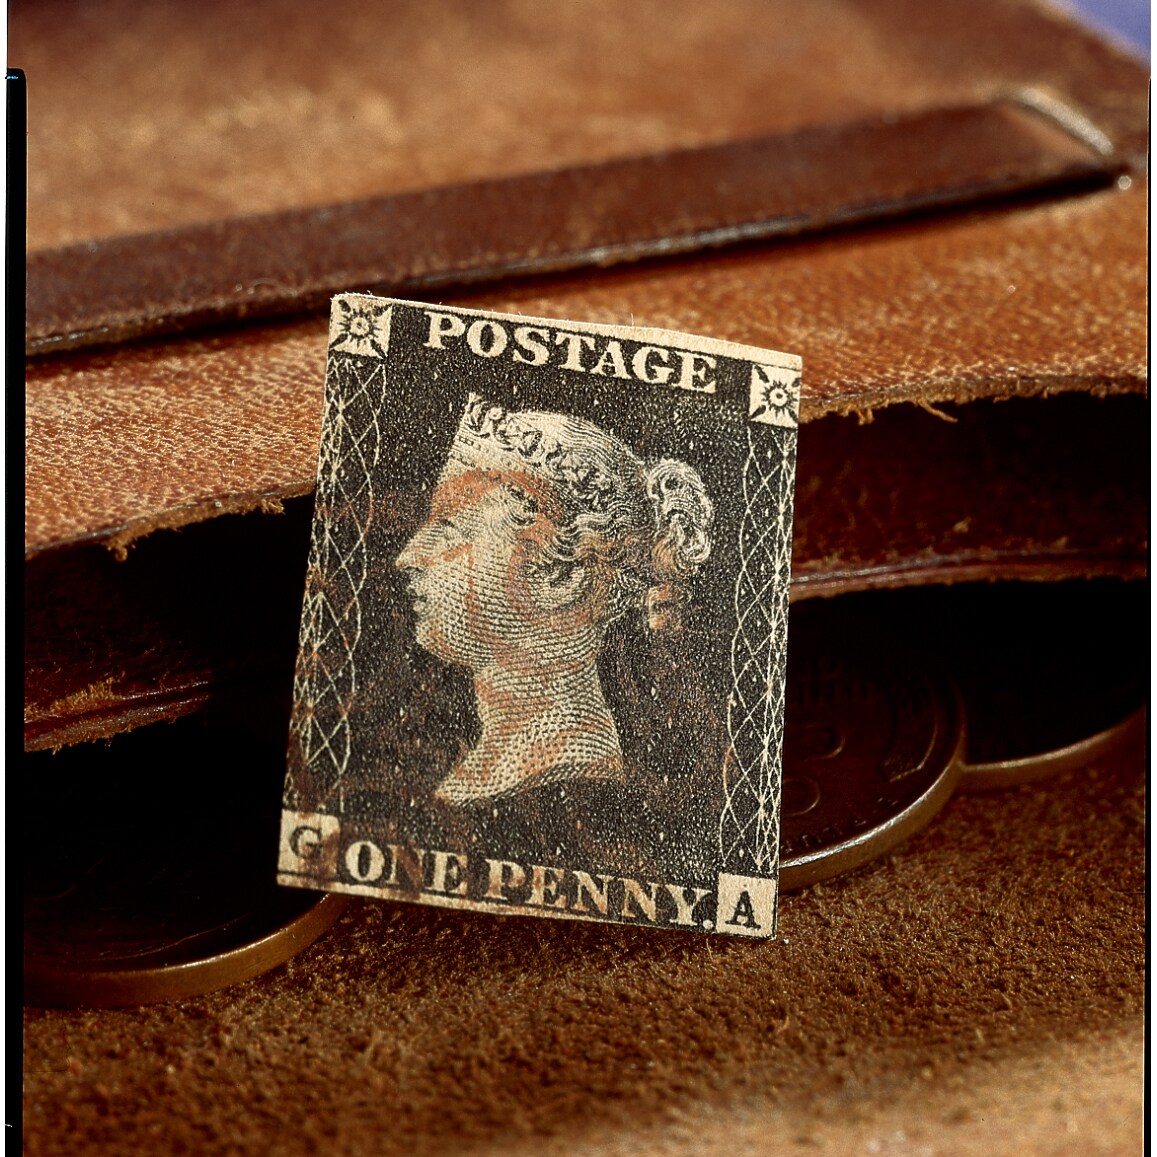 Penny Black Stamp